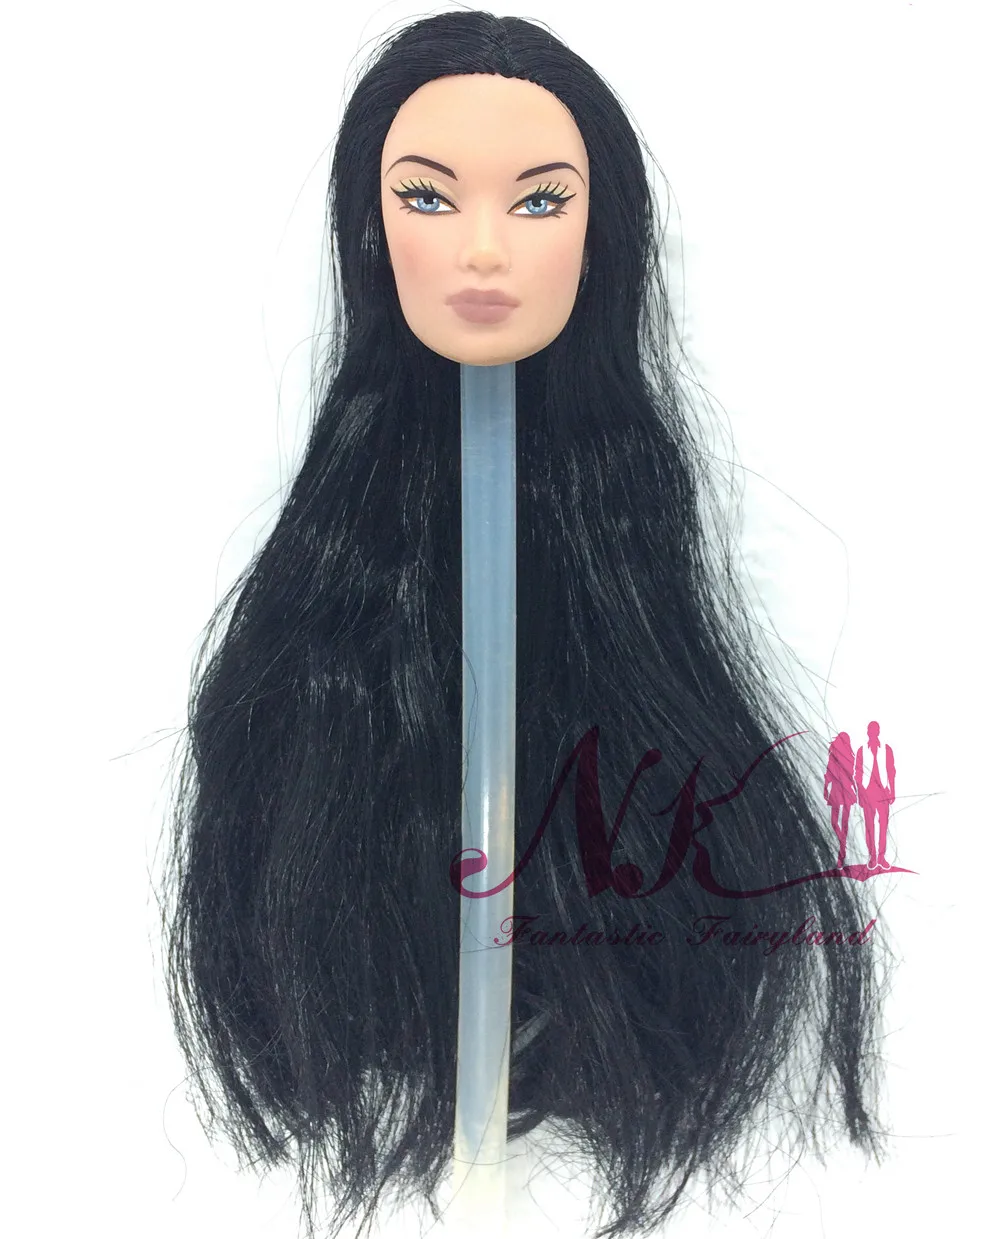 Нагорный Карабах 3 компл./лот случайным образом модные роялти Оригинальная кукла целостности волос голова куклы для FR куклы 2002 Ограниченная серия коллекции